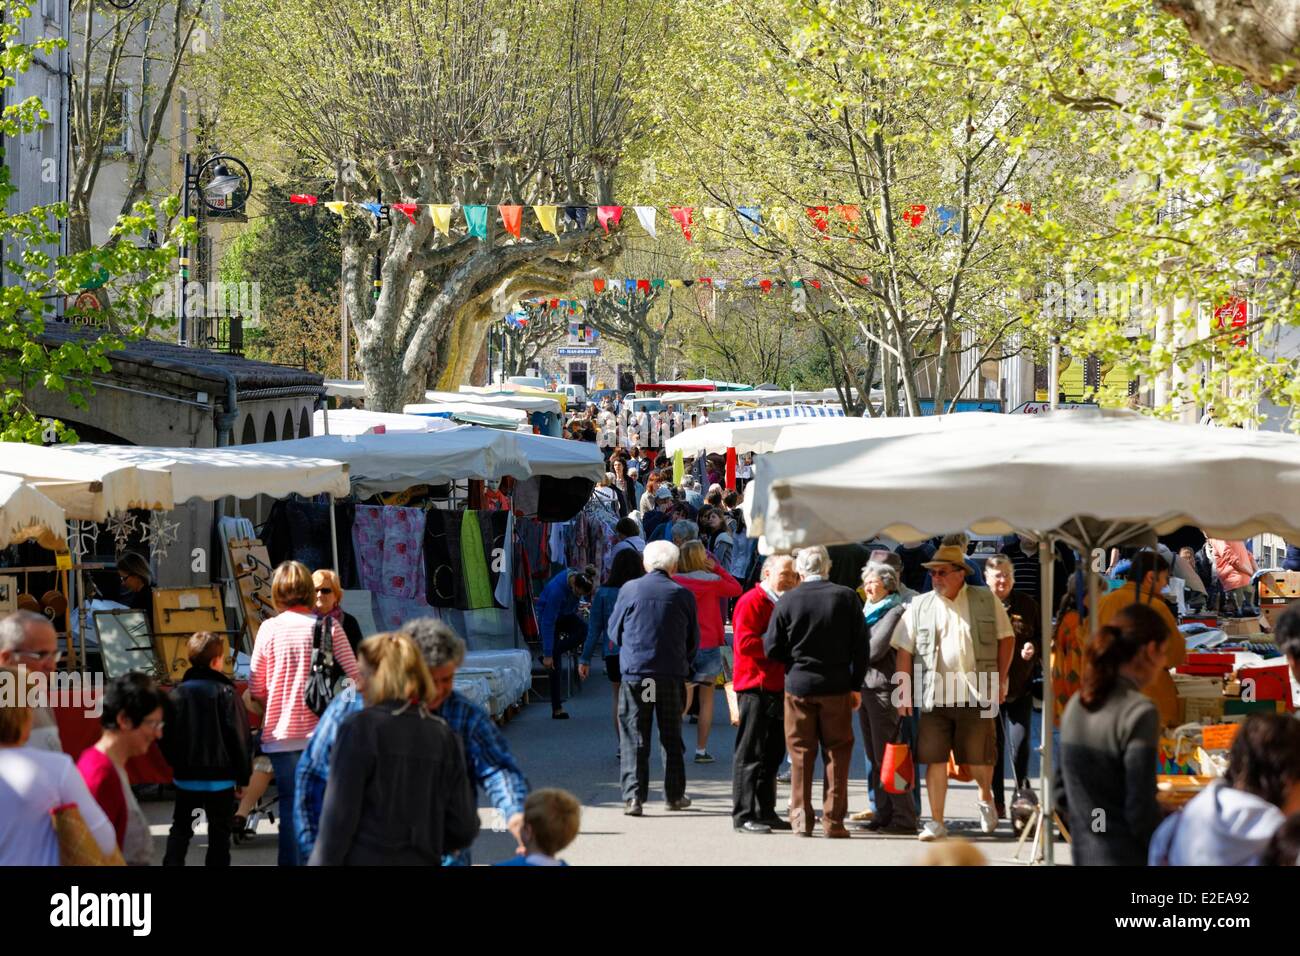 France, Gard, Saint Jean du Gard, market day Stock Photo